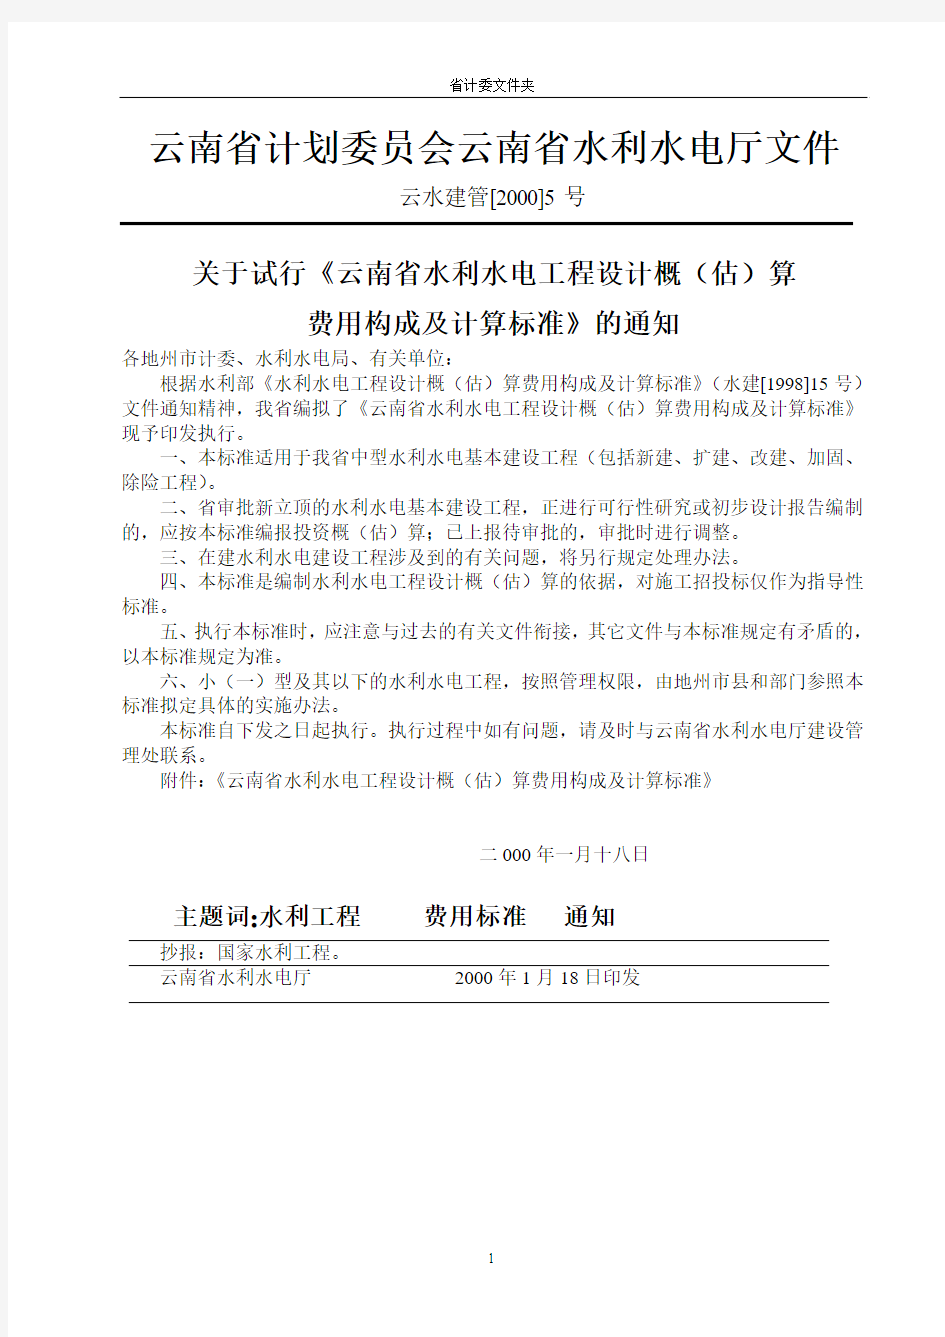 云南省计划委员会云南省水利水电厅文件[2000]5号通知